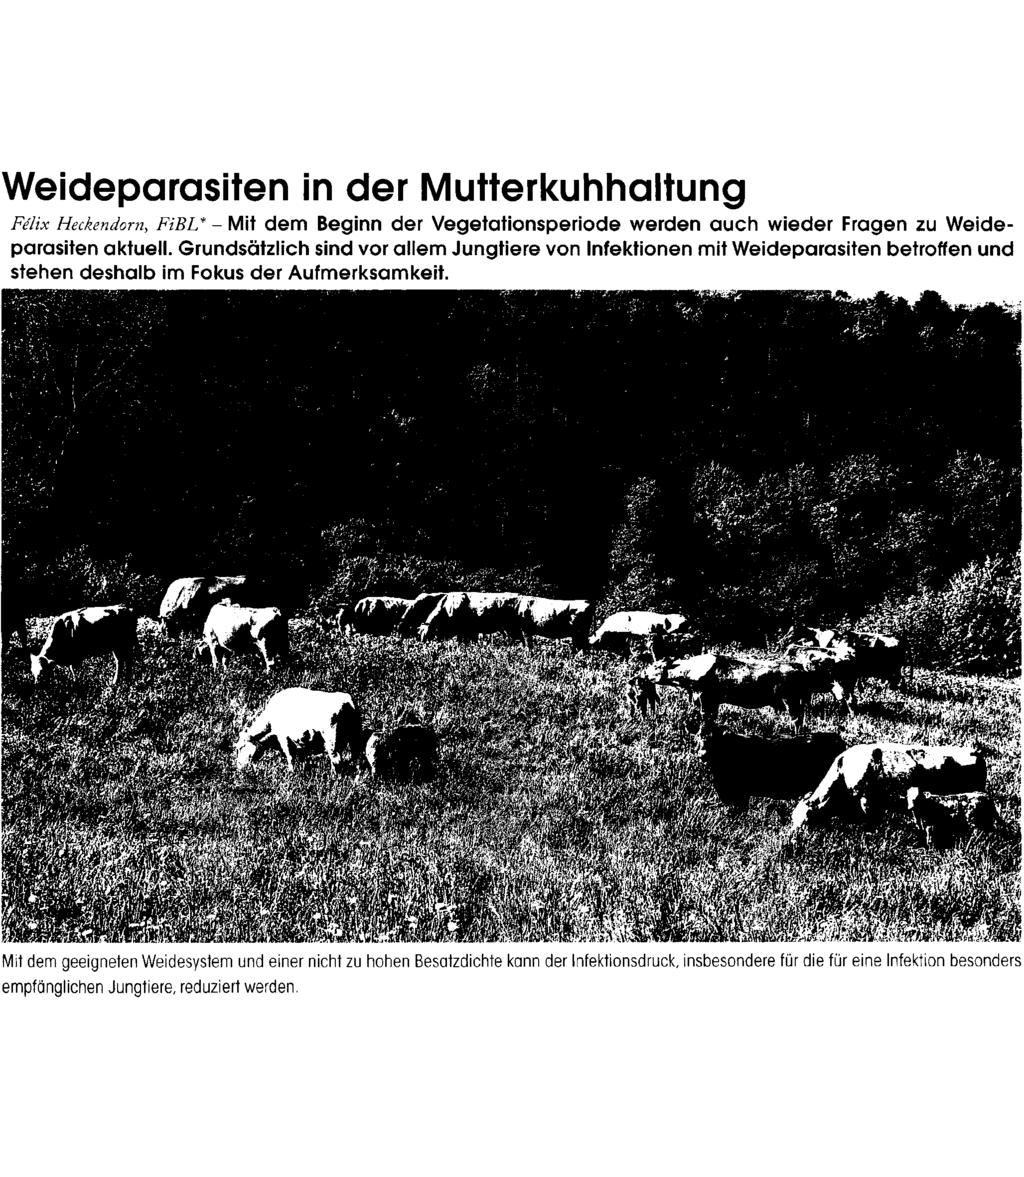 Weideparasiten in der Mutterkuhhaltung Felix Heckendorn, FiBL* - Mit dem Beginn der Vegetationsperiode werden auch wieder